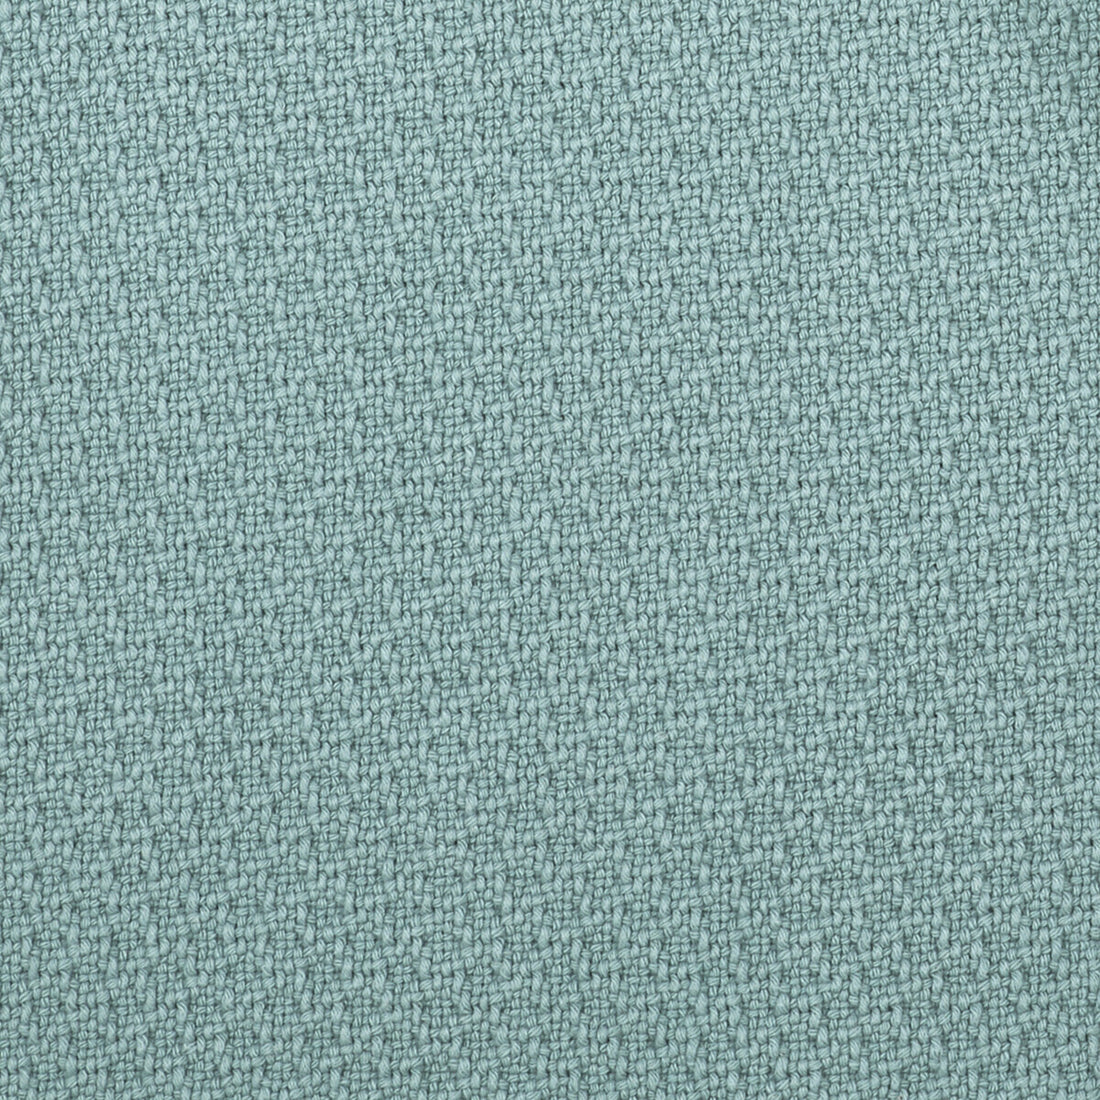 Ordono fabric in agua color - pattern LCT1003.002.0 - by Gaston y Daniela in the Lorenzo Castillo V collection